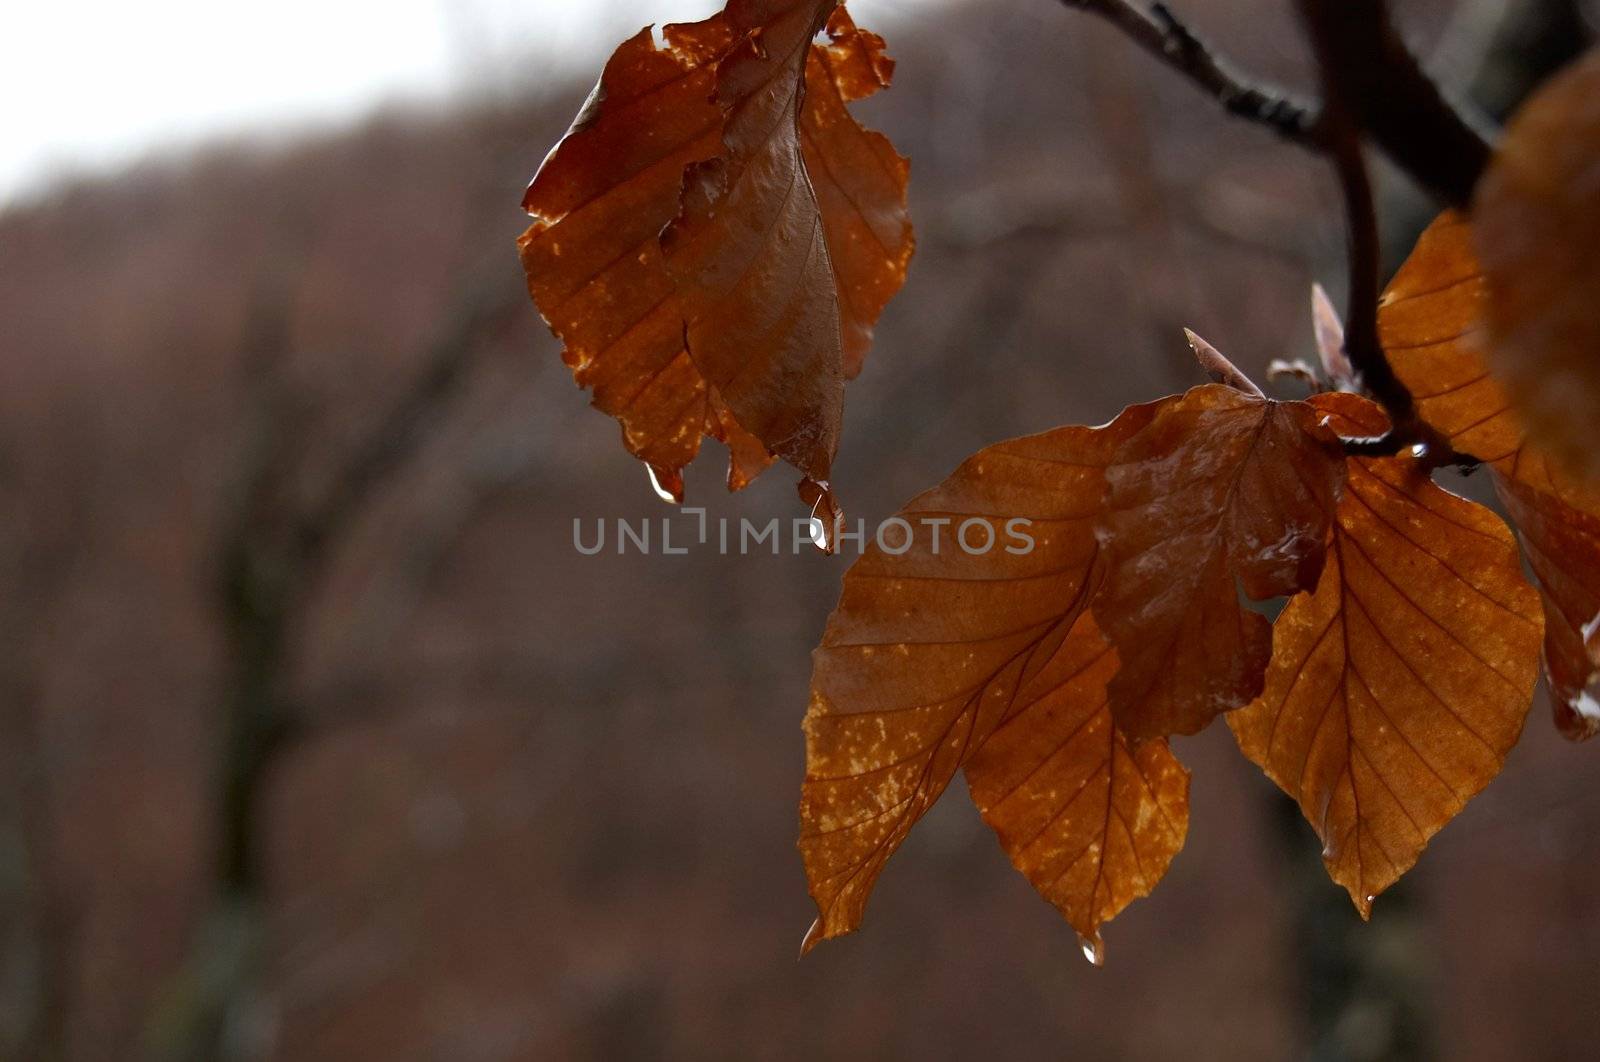 Old leaves by Telal